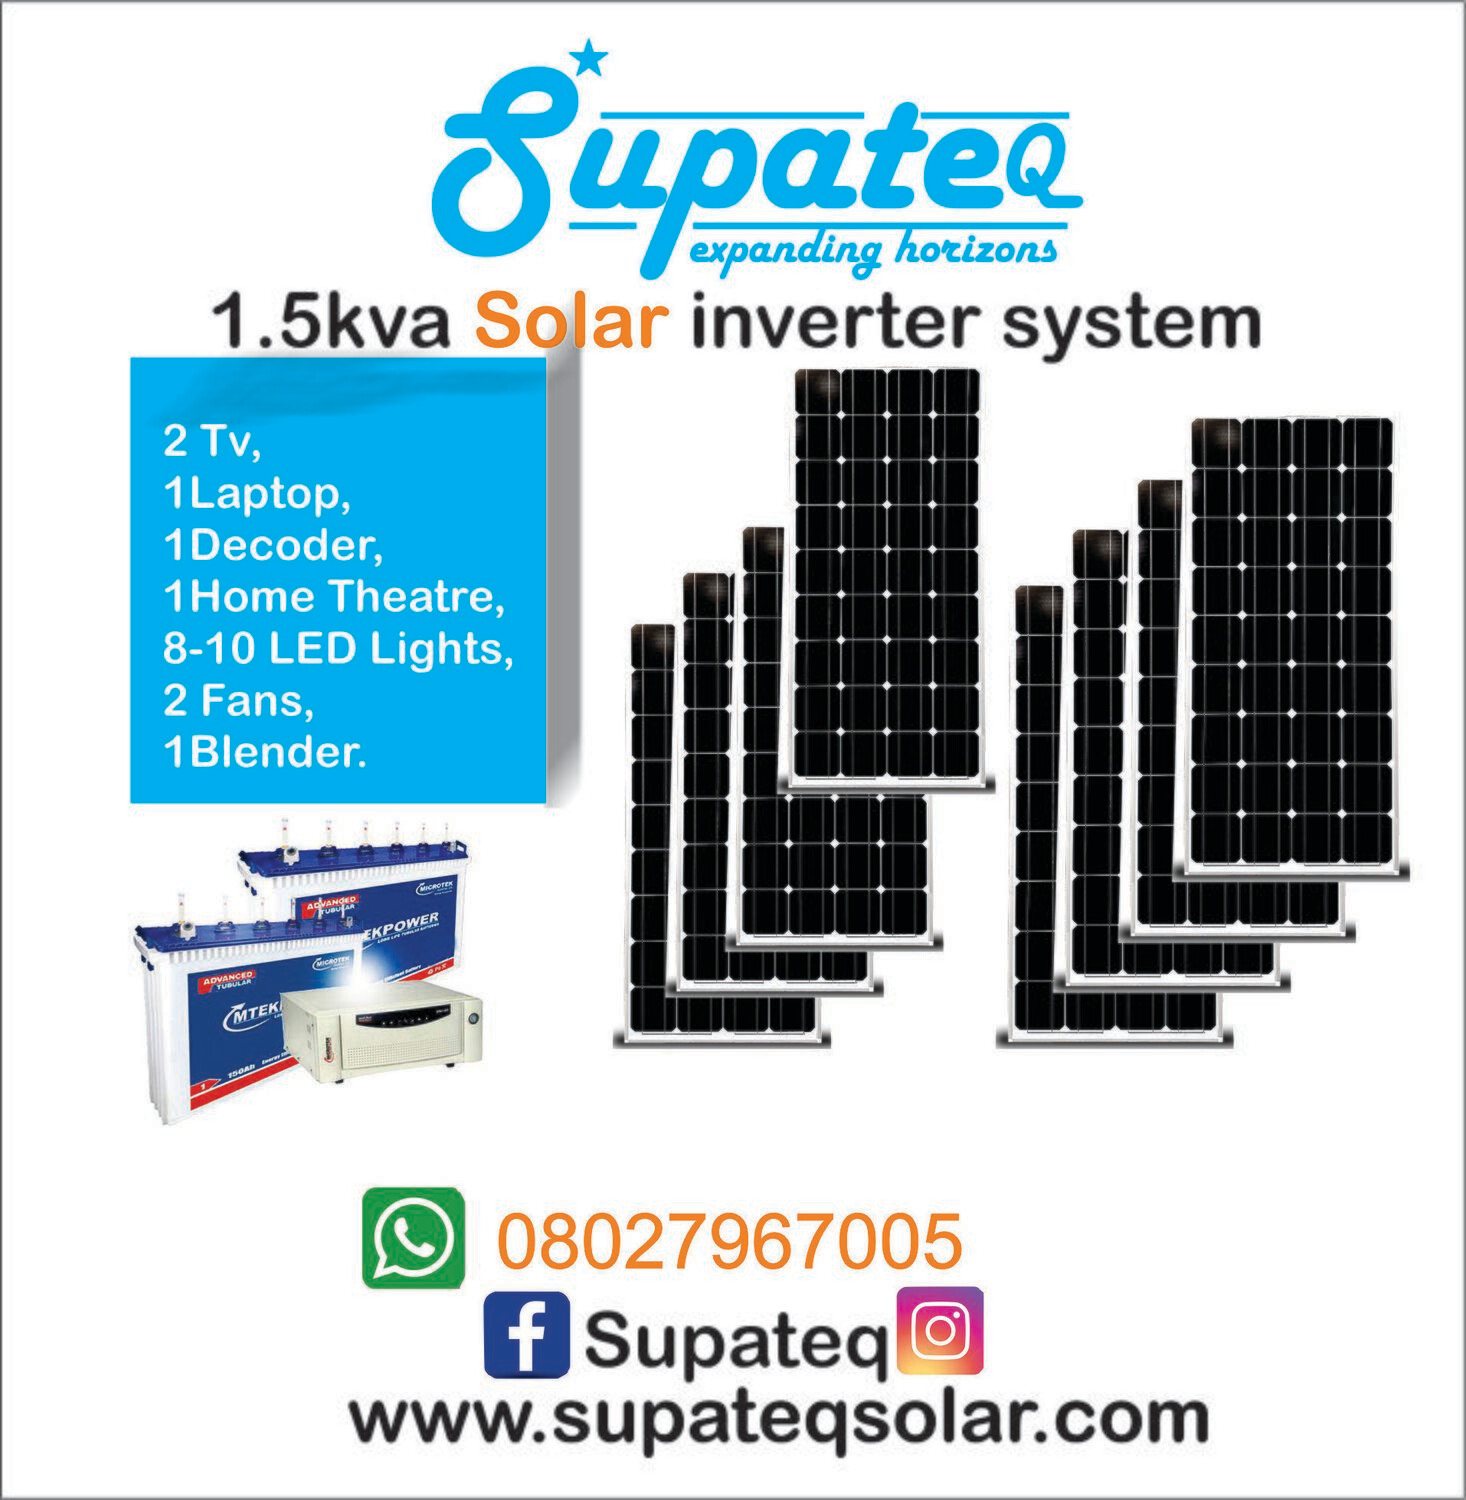 1.5kva solar inverter installation